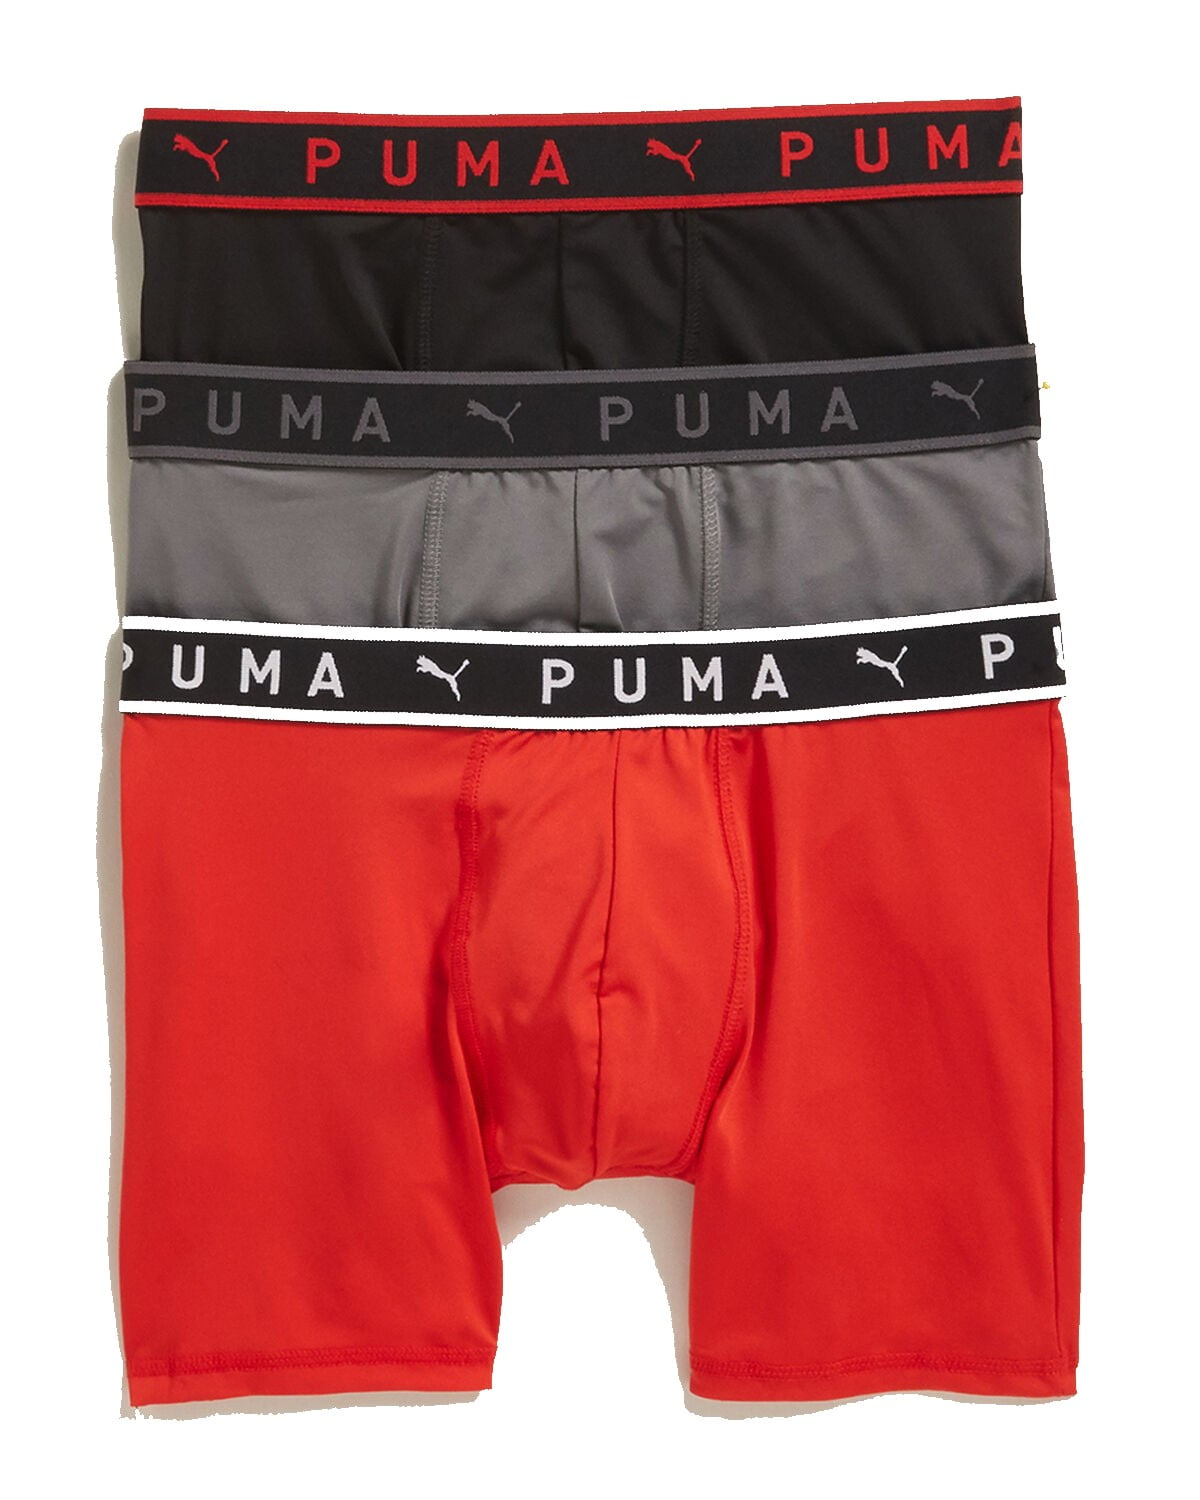 puma athletic underwear